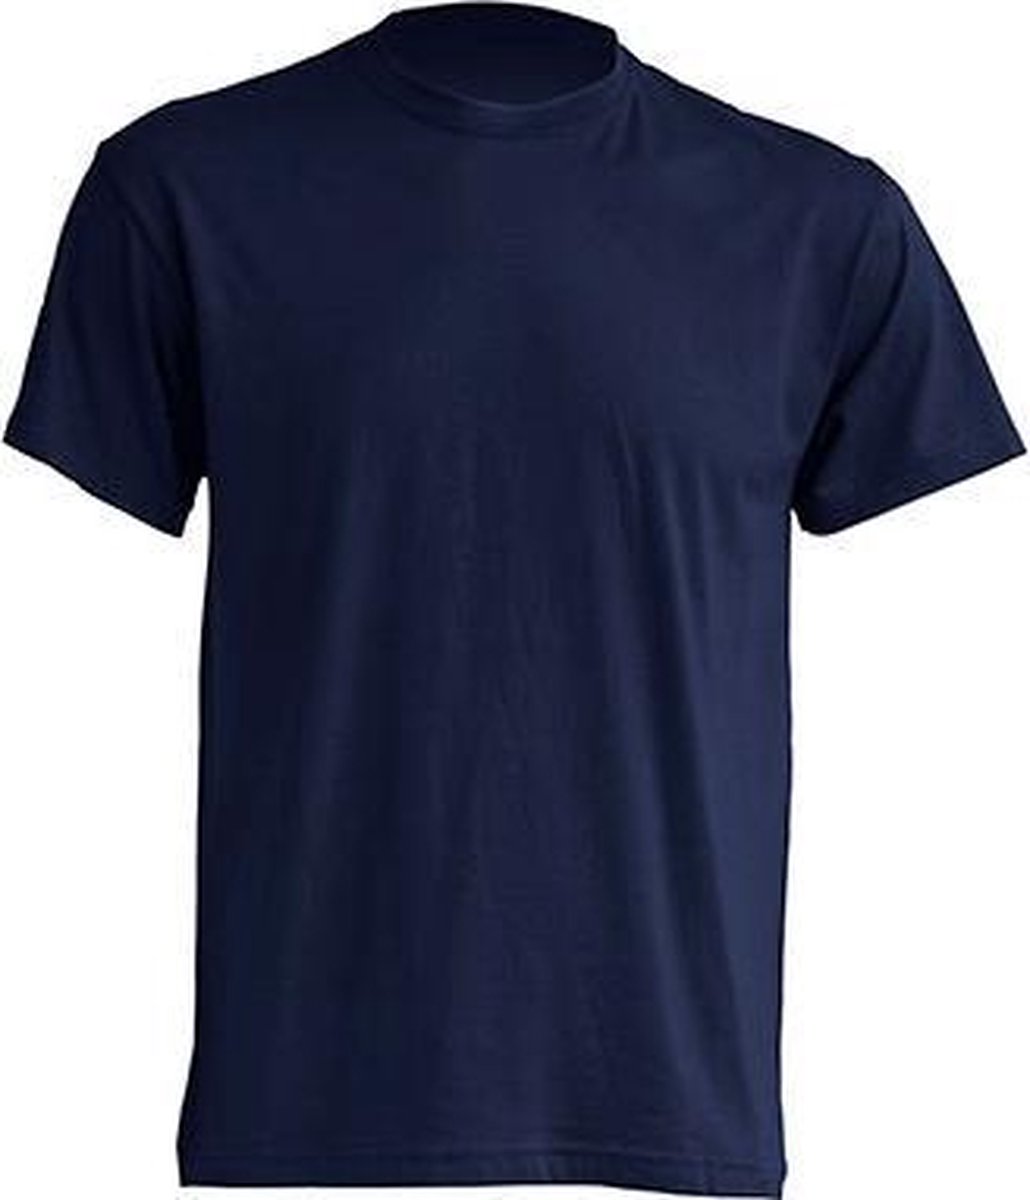 JHK t-shirts kleur navy maat S - Set van 5 stuks